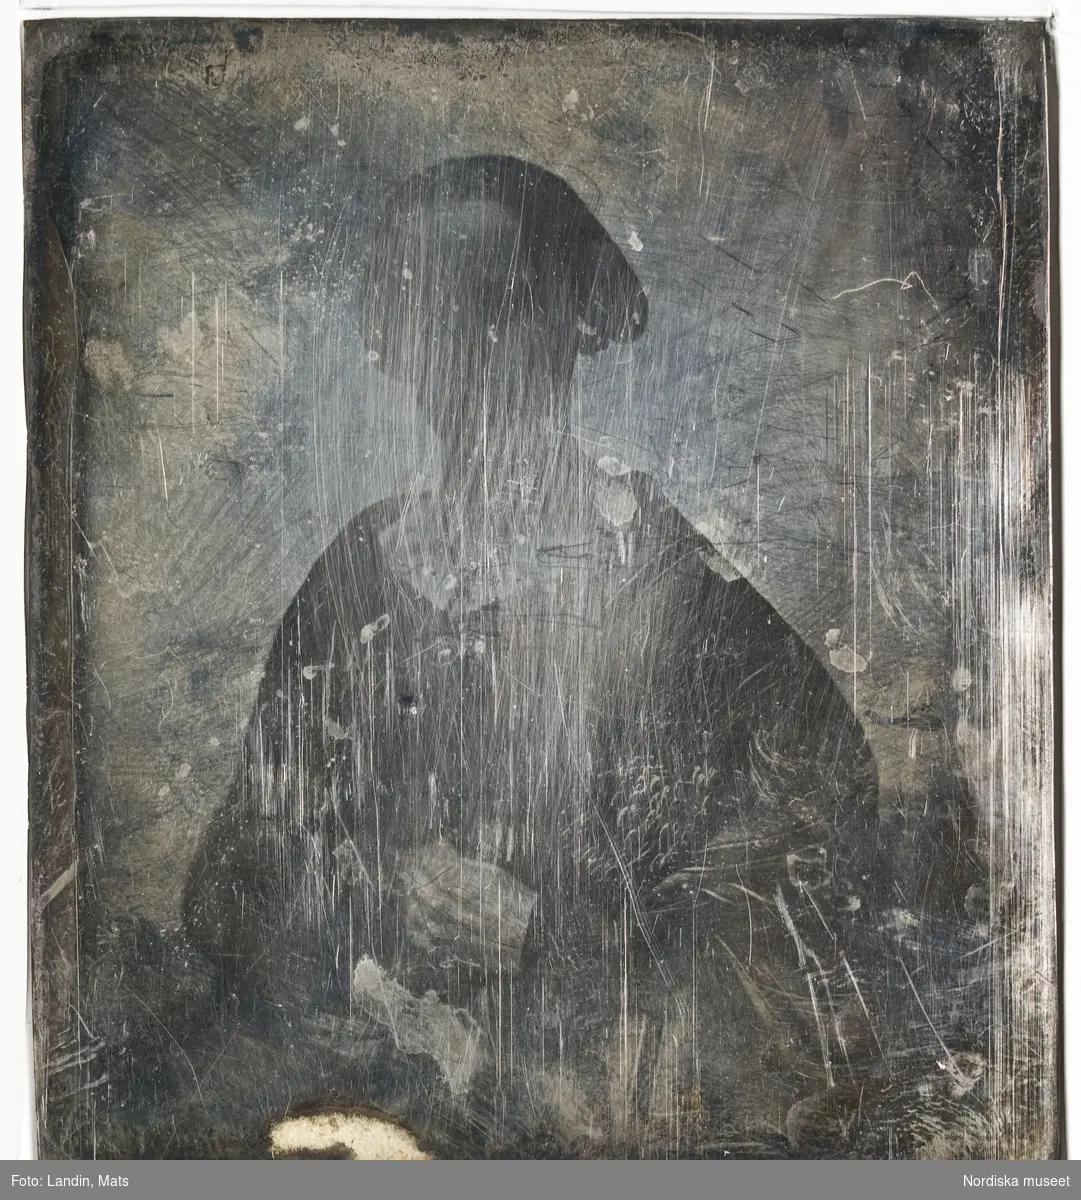 Porträtt av okänd kvinna. Dagerrotyp / daguerreotyp, ca 1850, svårt repad/oxiderad. Nordiska museet inv.nr 205461b + c (fodral).
-
Portrait of an unidentified woman. Effaced sixth-plate daguerreotype, c. 1850.